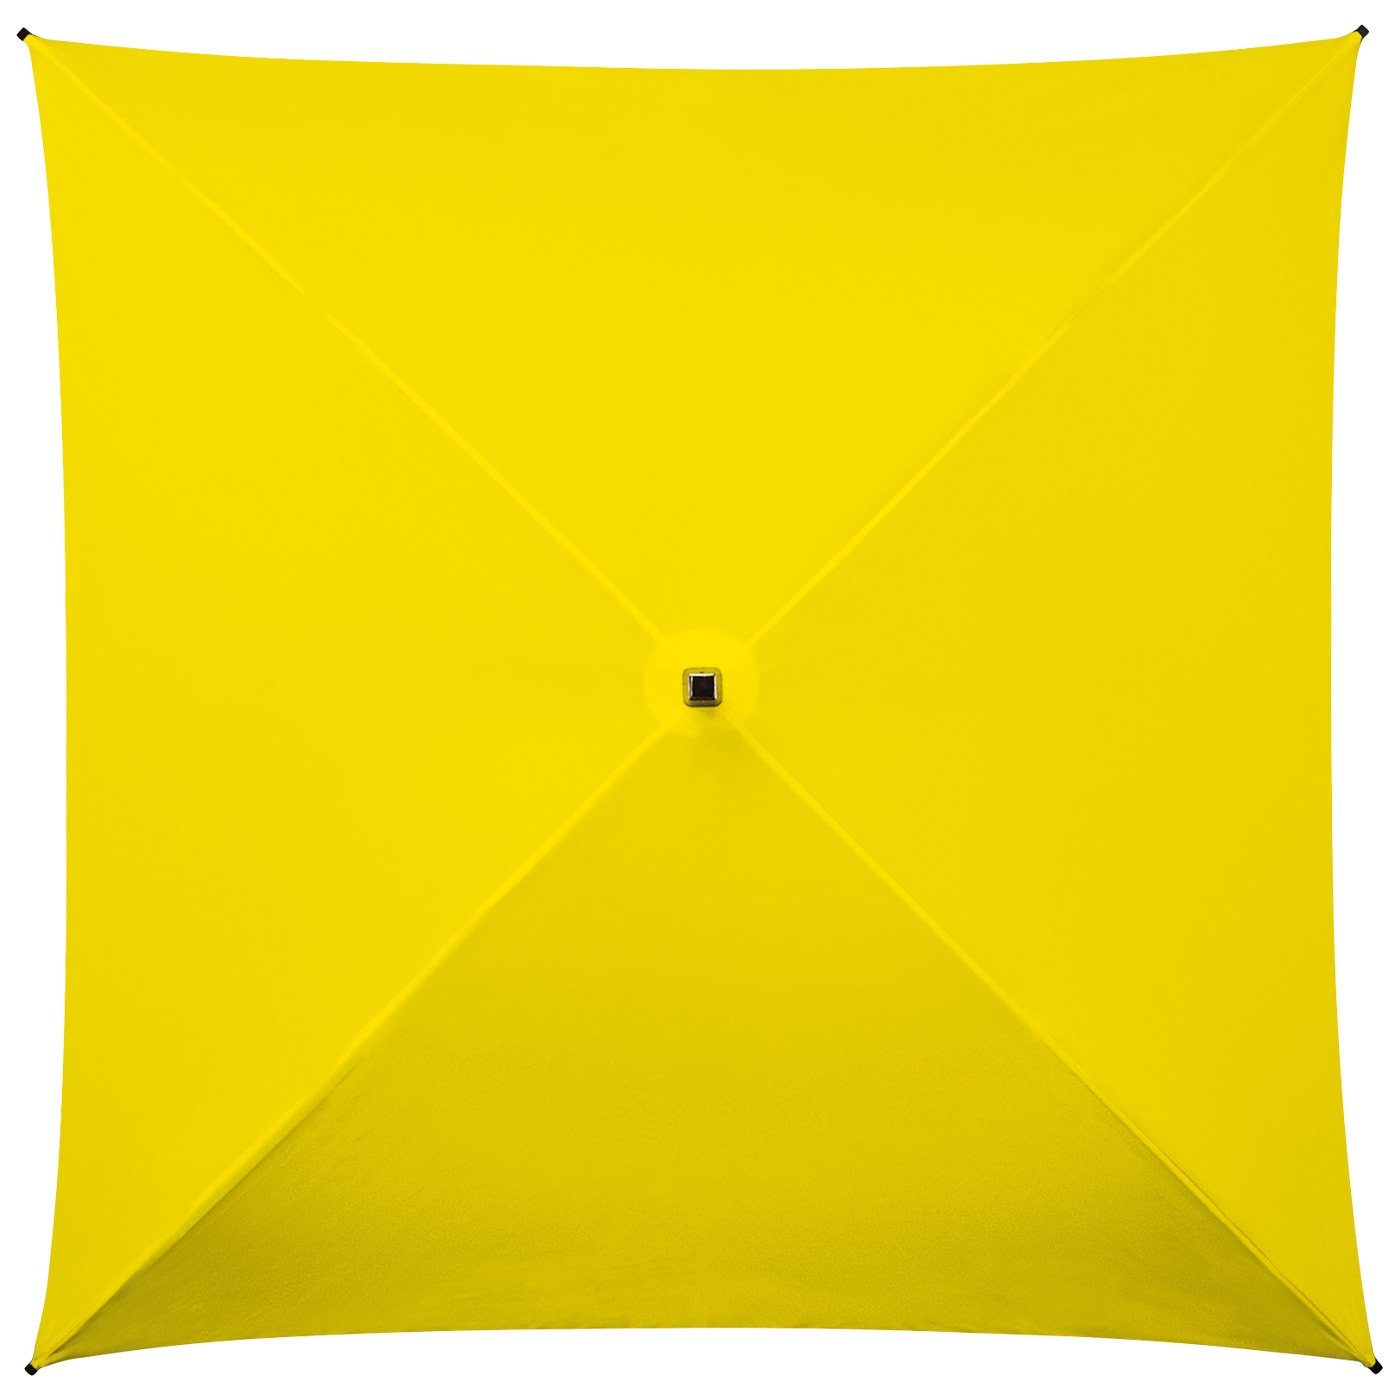 Regenschirm der besondere Langregenschirm gelb voll Regenschirm, Impliva Square® All ganz quadratischer